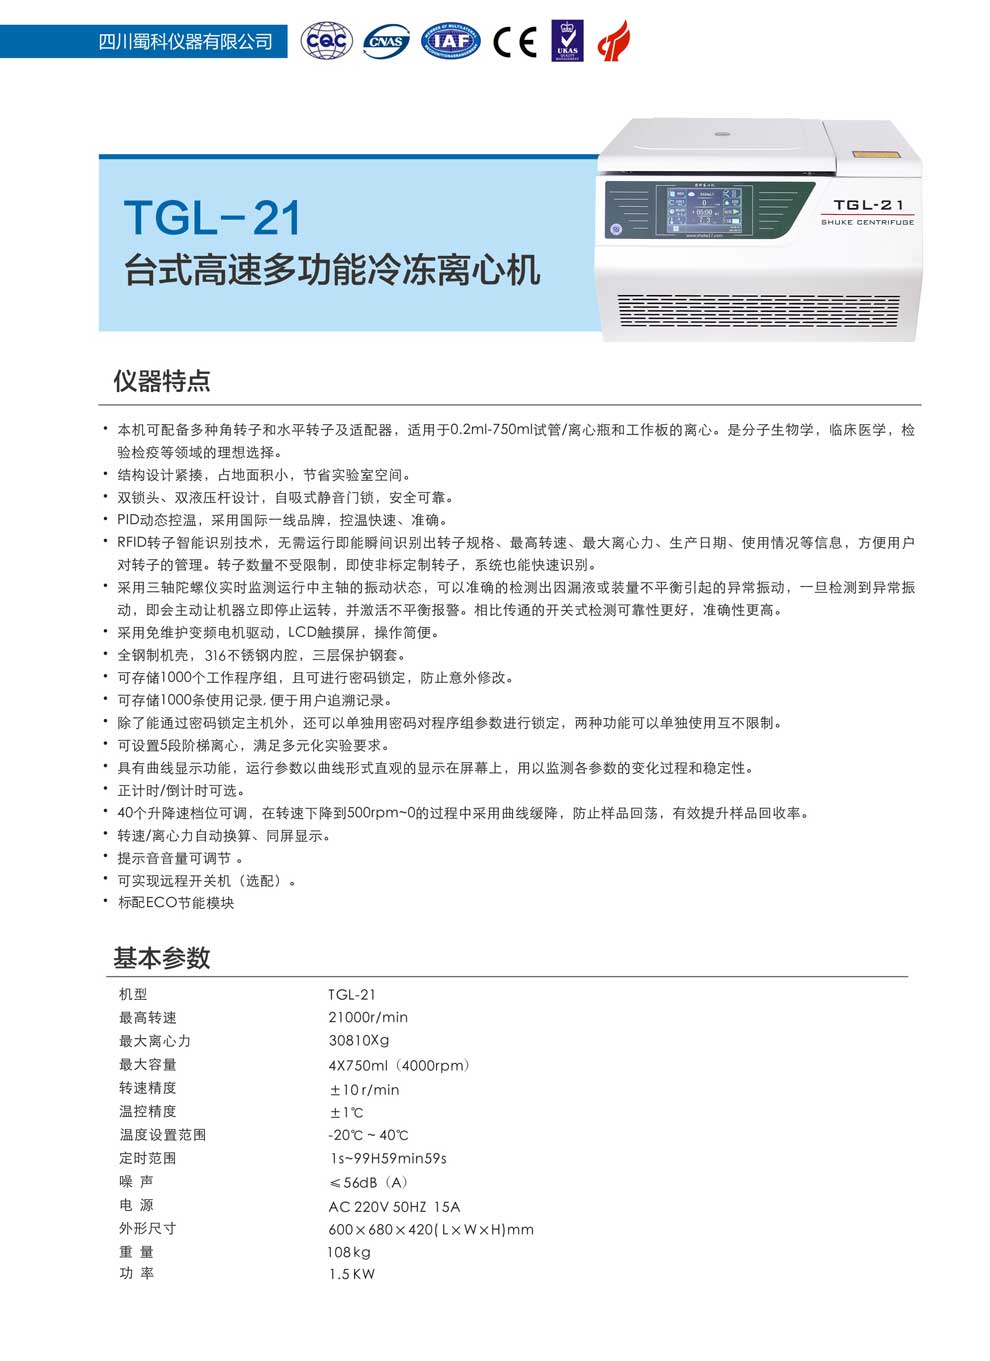 TGL-21-彩1.jpg